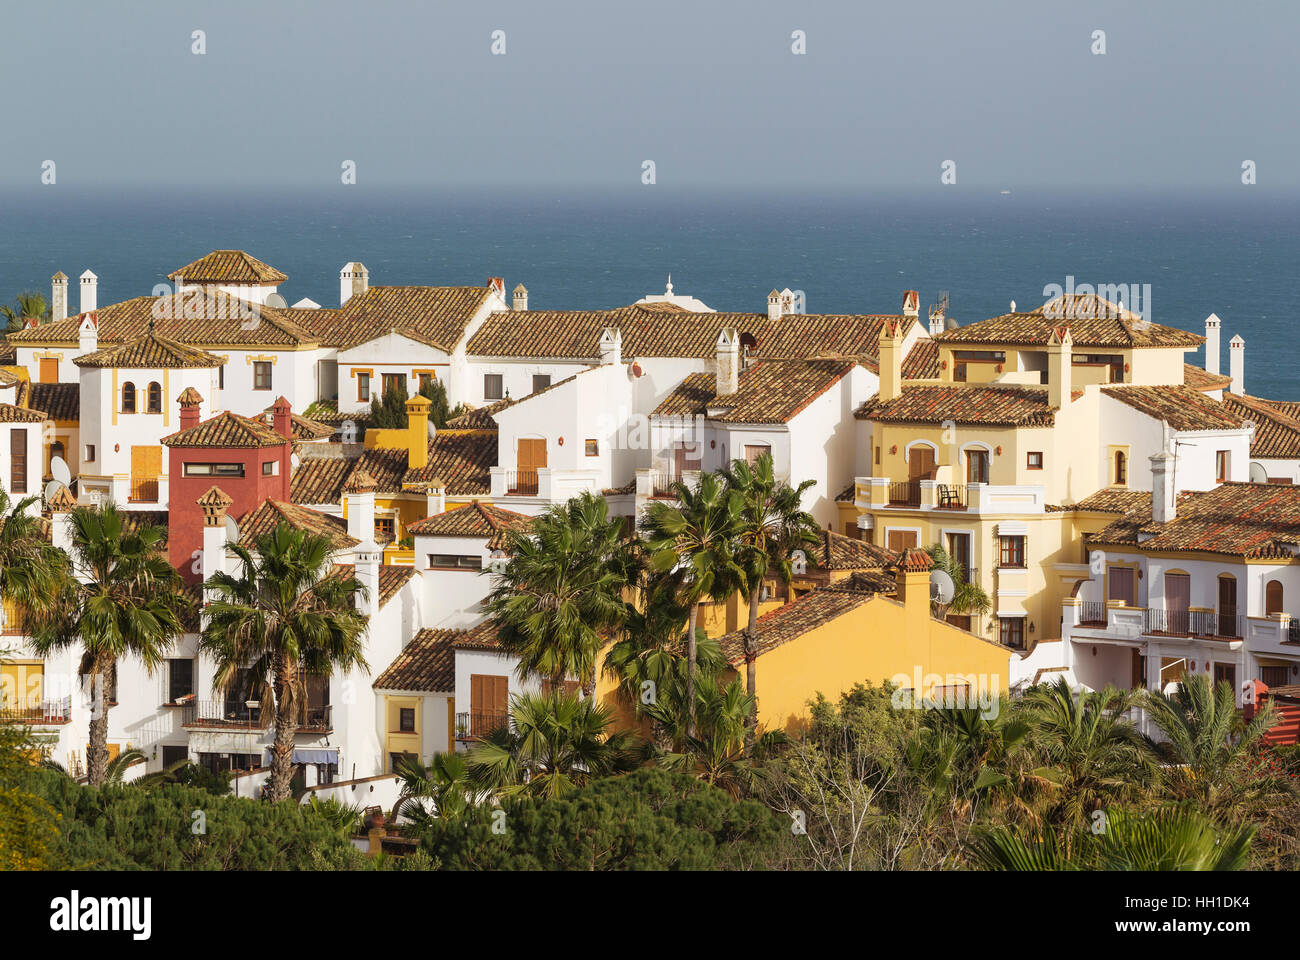 Andalusian architecture, La Alcaidesa at the Mediterranean Sea, Cadiz province, Andalusia, Spain Stock Photo